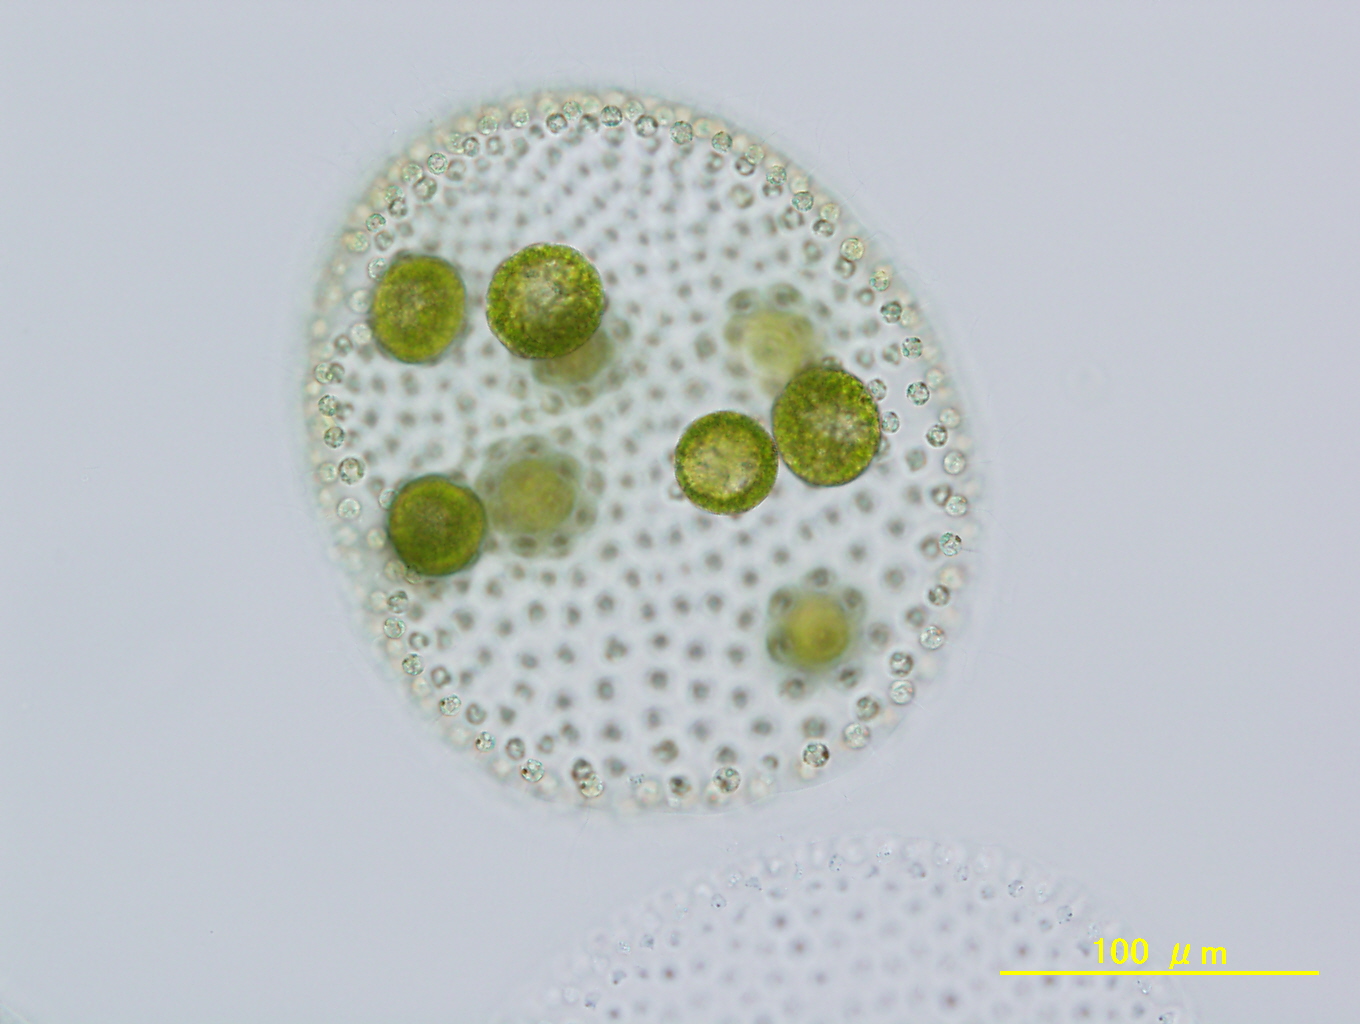 Volvox reticuliferus NIES-3785 female spheroid with eggs